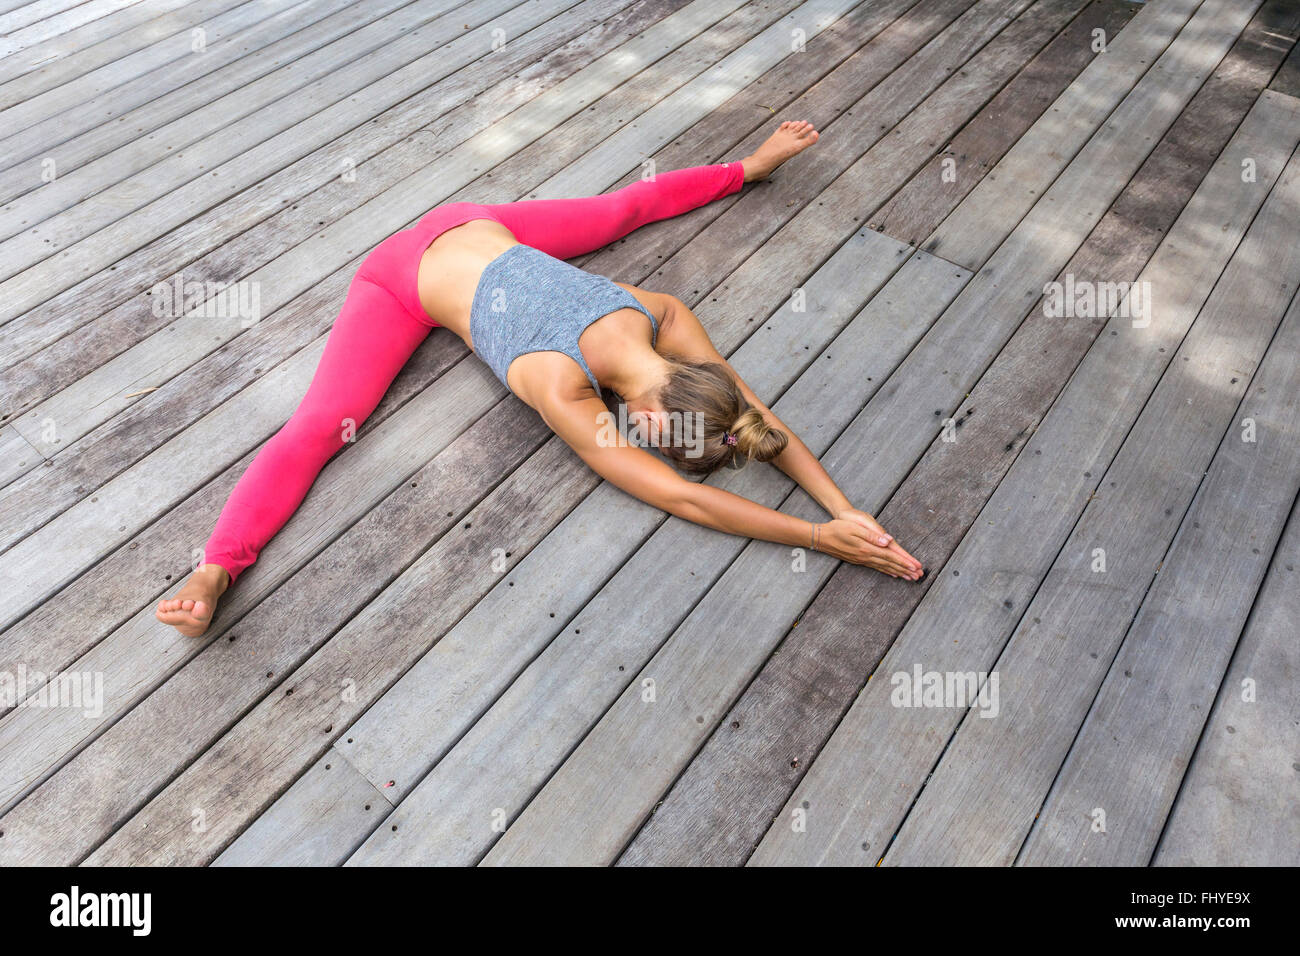 Frau im Yoga straddle Position auf deck Stockfoto